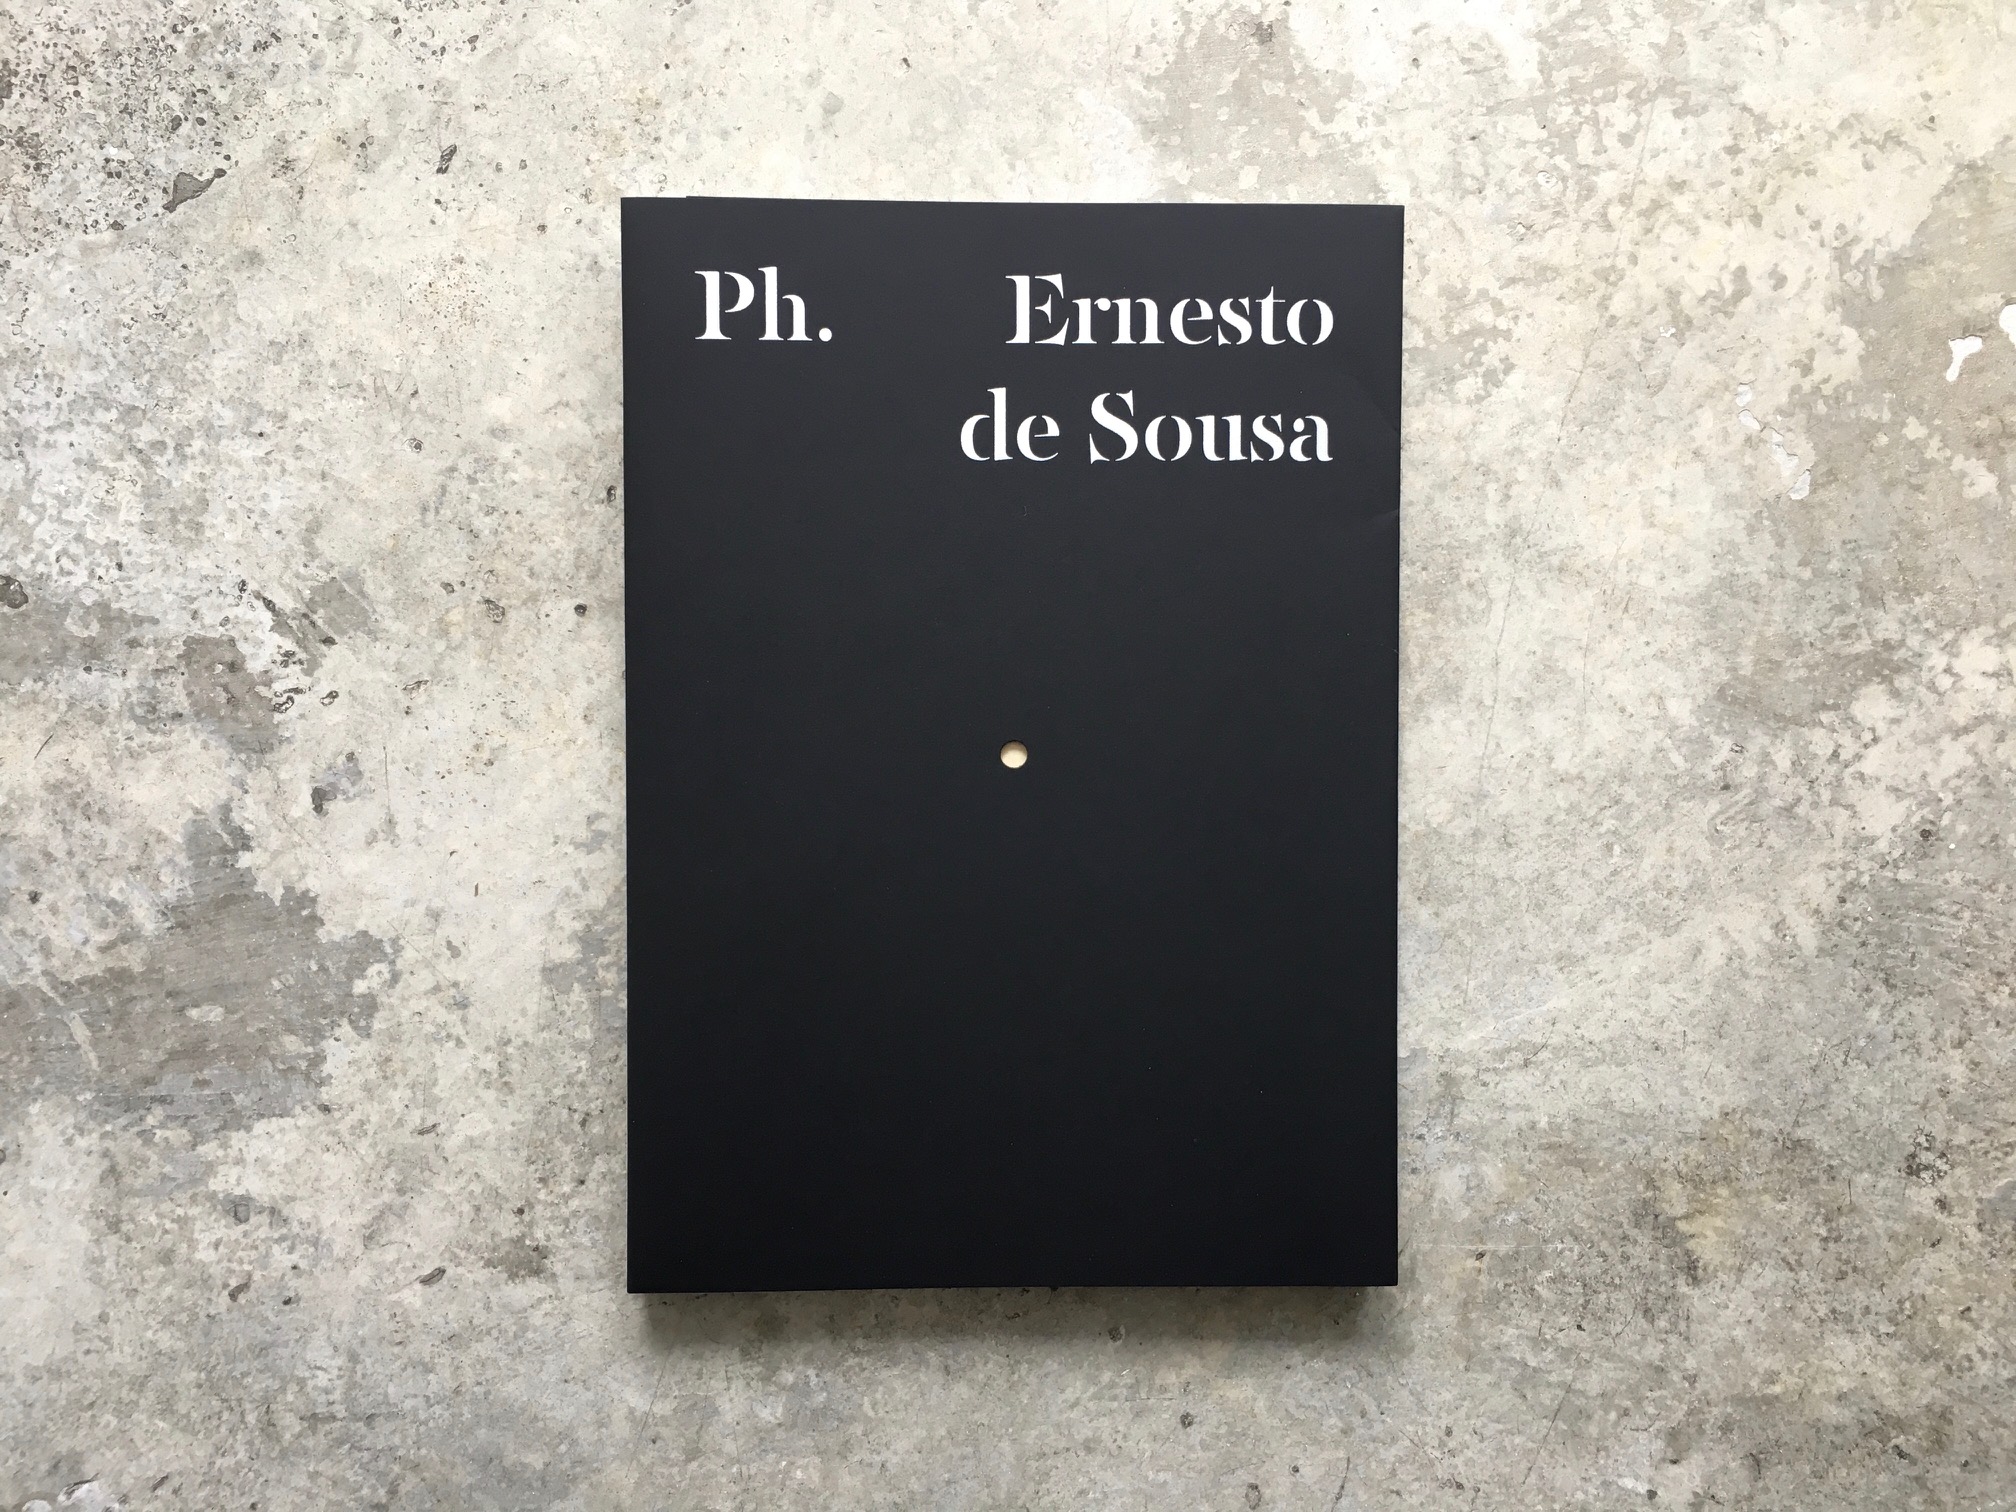 No centenário de Ernesto de Sousa, Imprensa Nacional lança novo livro da Série Ph.